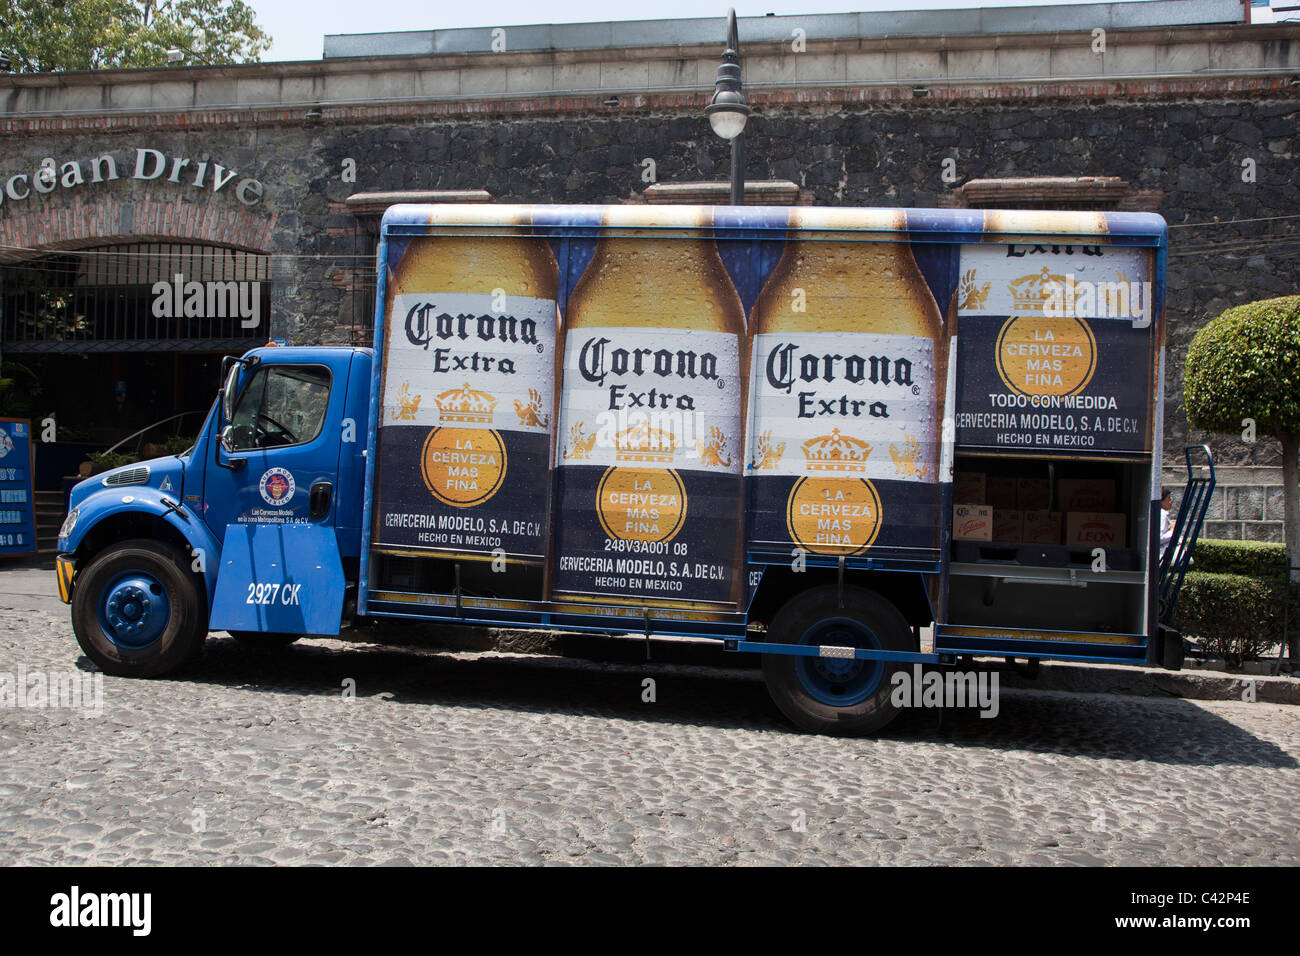 Des camions de livraison de bière Corona Banque D'Images